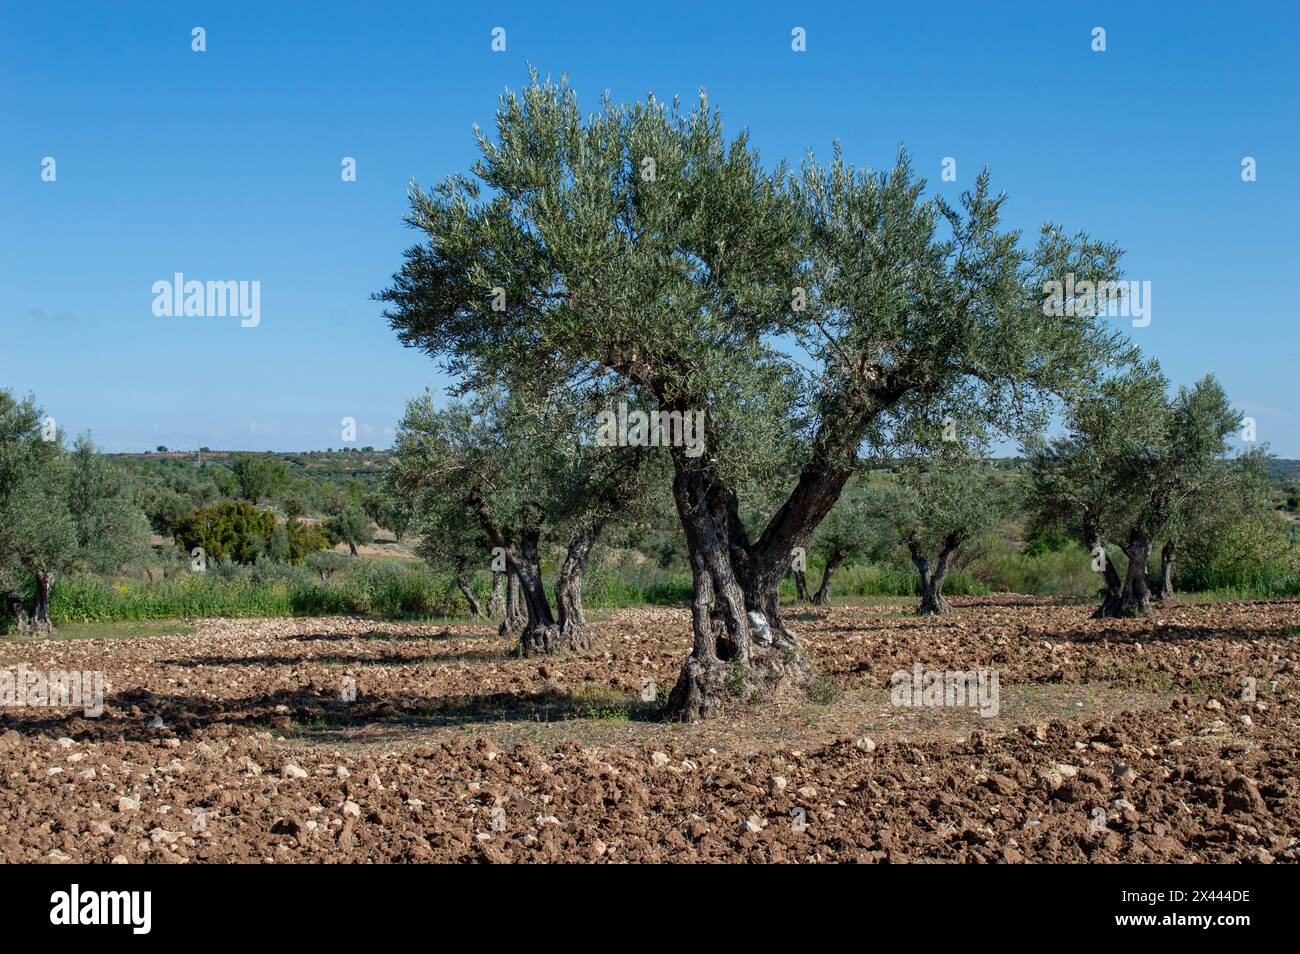 Centenary olive tree in Spanish olive grove in spring Stock Photo